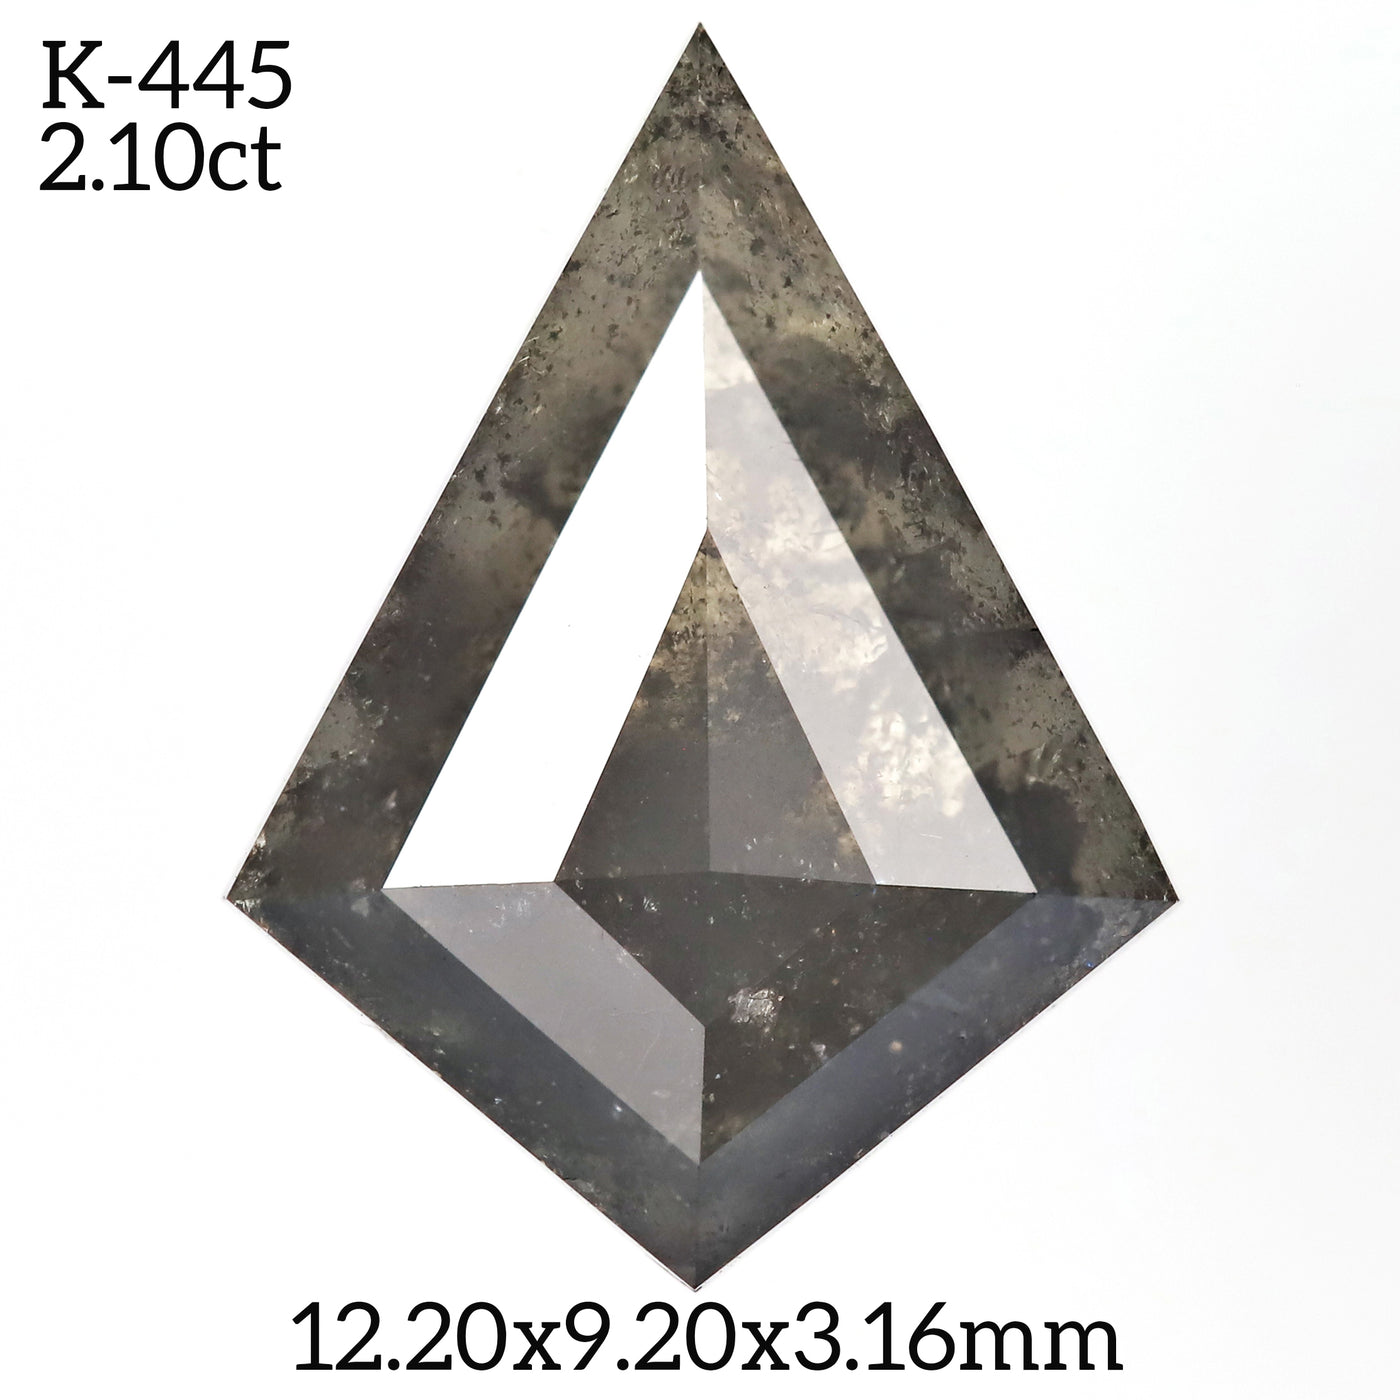 K445 - Salt and pepper kite diamond